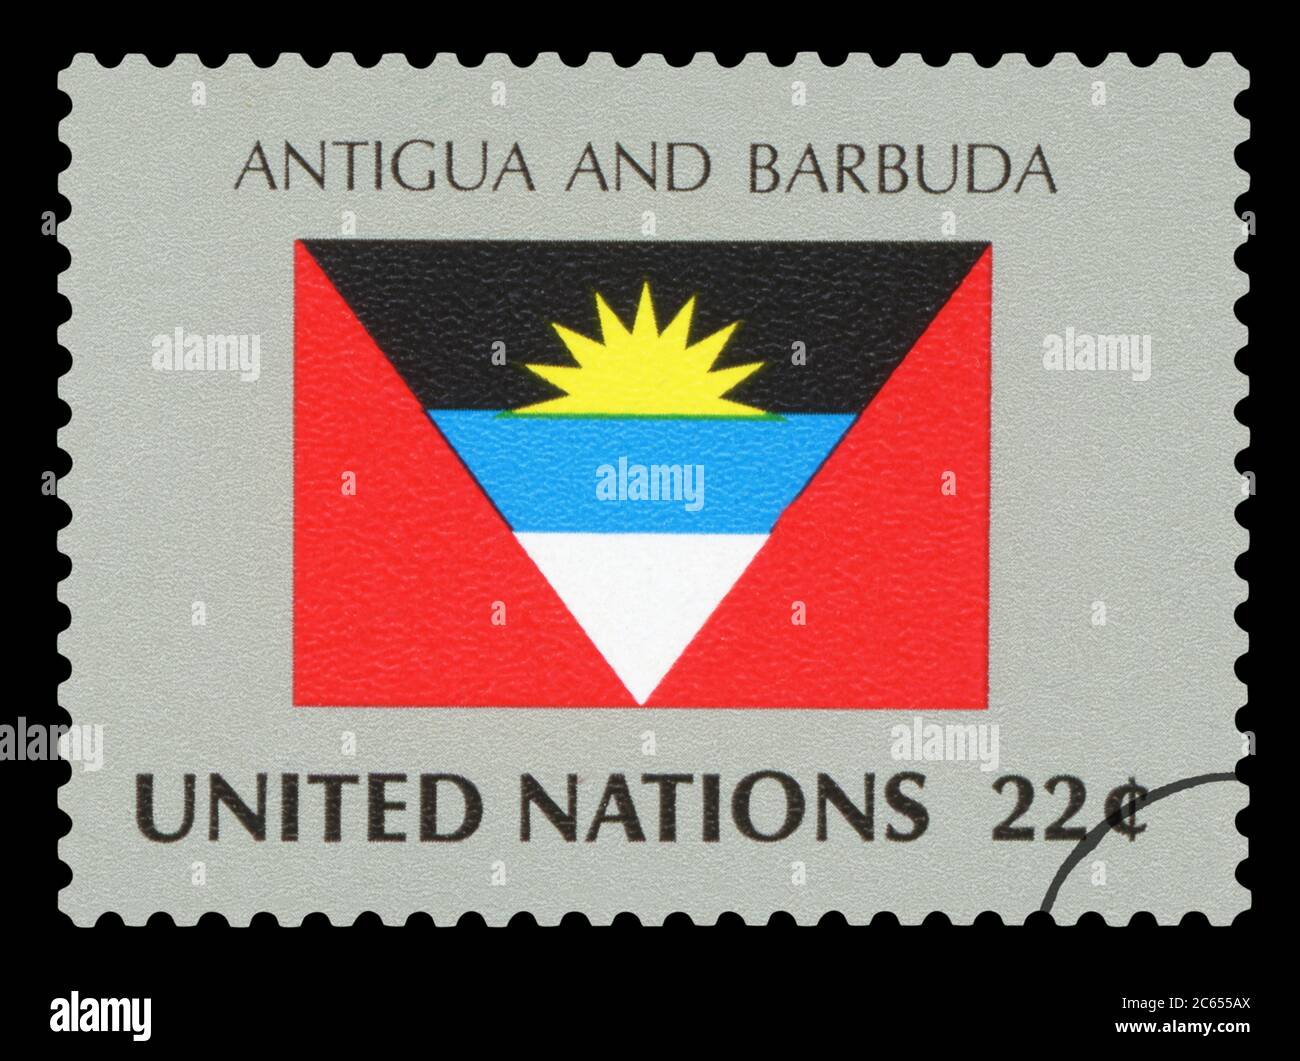 NTIGUA UND BARBUDA - Briefmarke der NATIONALFLAGGE VON ANTIGUA UND BARBUDA, Serie der Vereinten Nationen, um 1984. Stockfoto